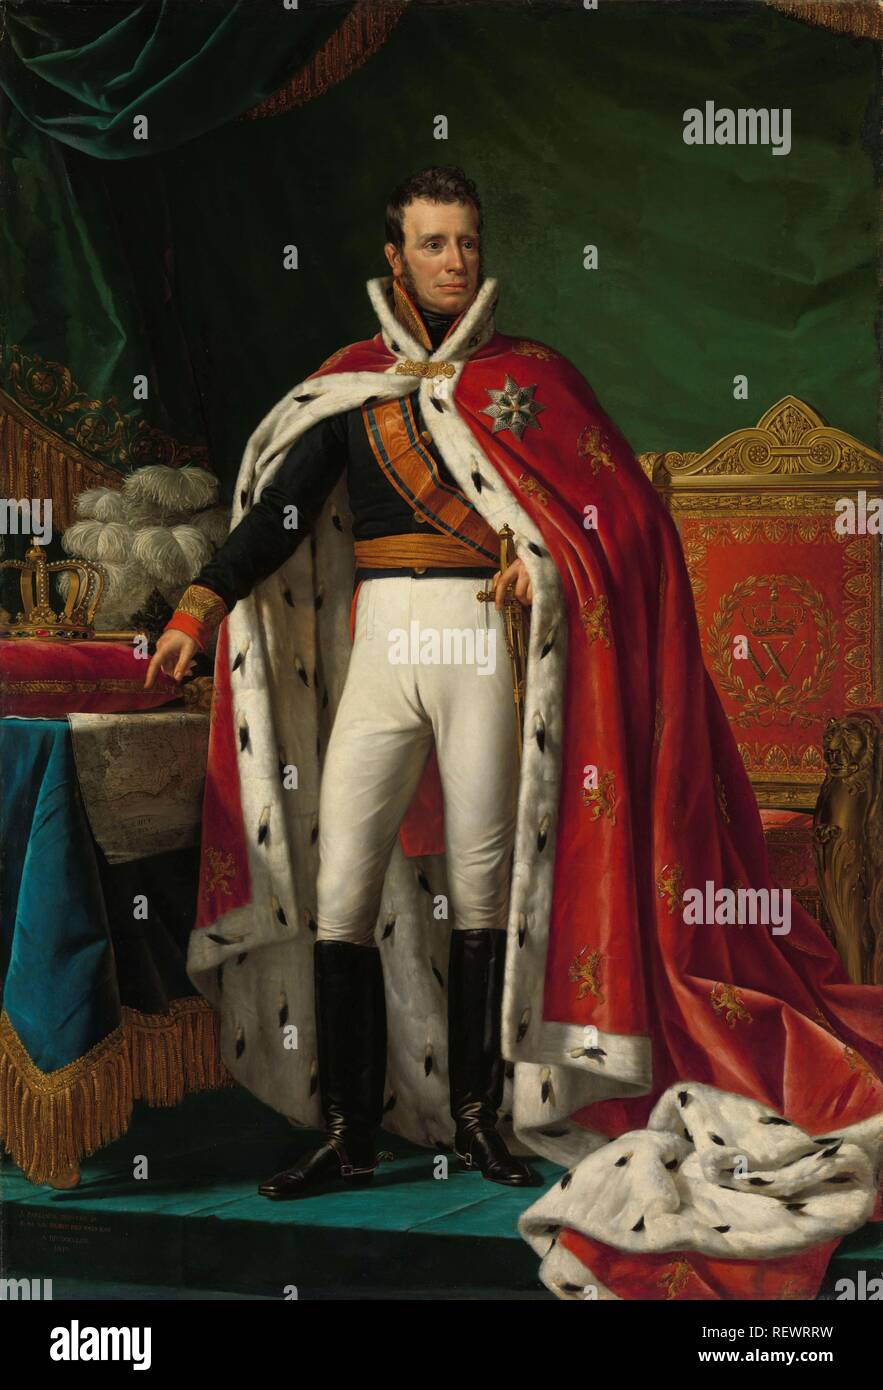 Portrait von Wilhelm I., König der Niederlande. Dating: 1819. Maße: h 227 cm x w 155,5 cm. Museum: Rijksmuseum, Amsterdam. Autor: Joseph Paelinck. Stockfoto